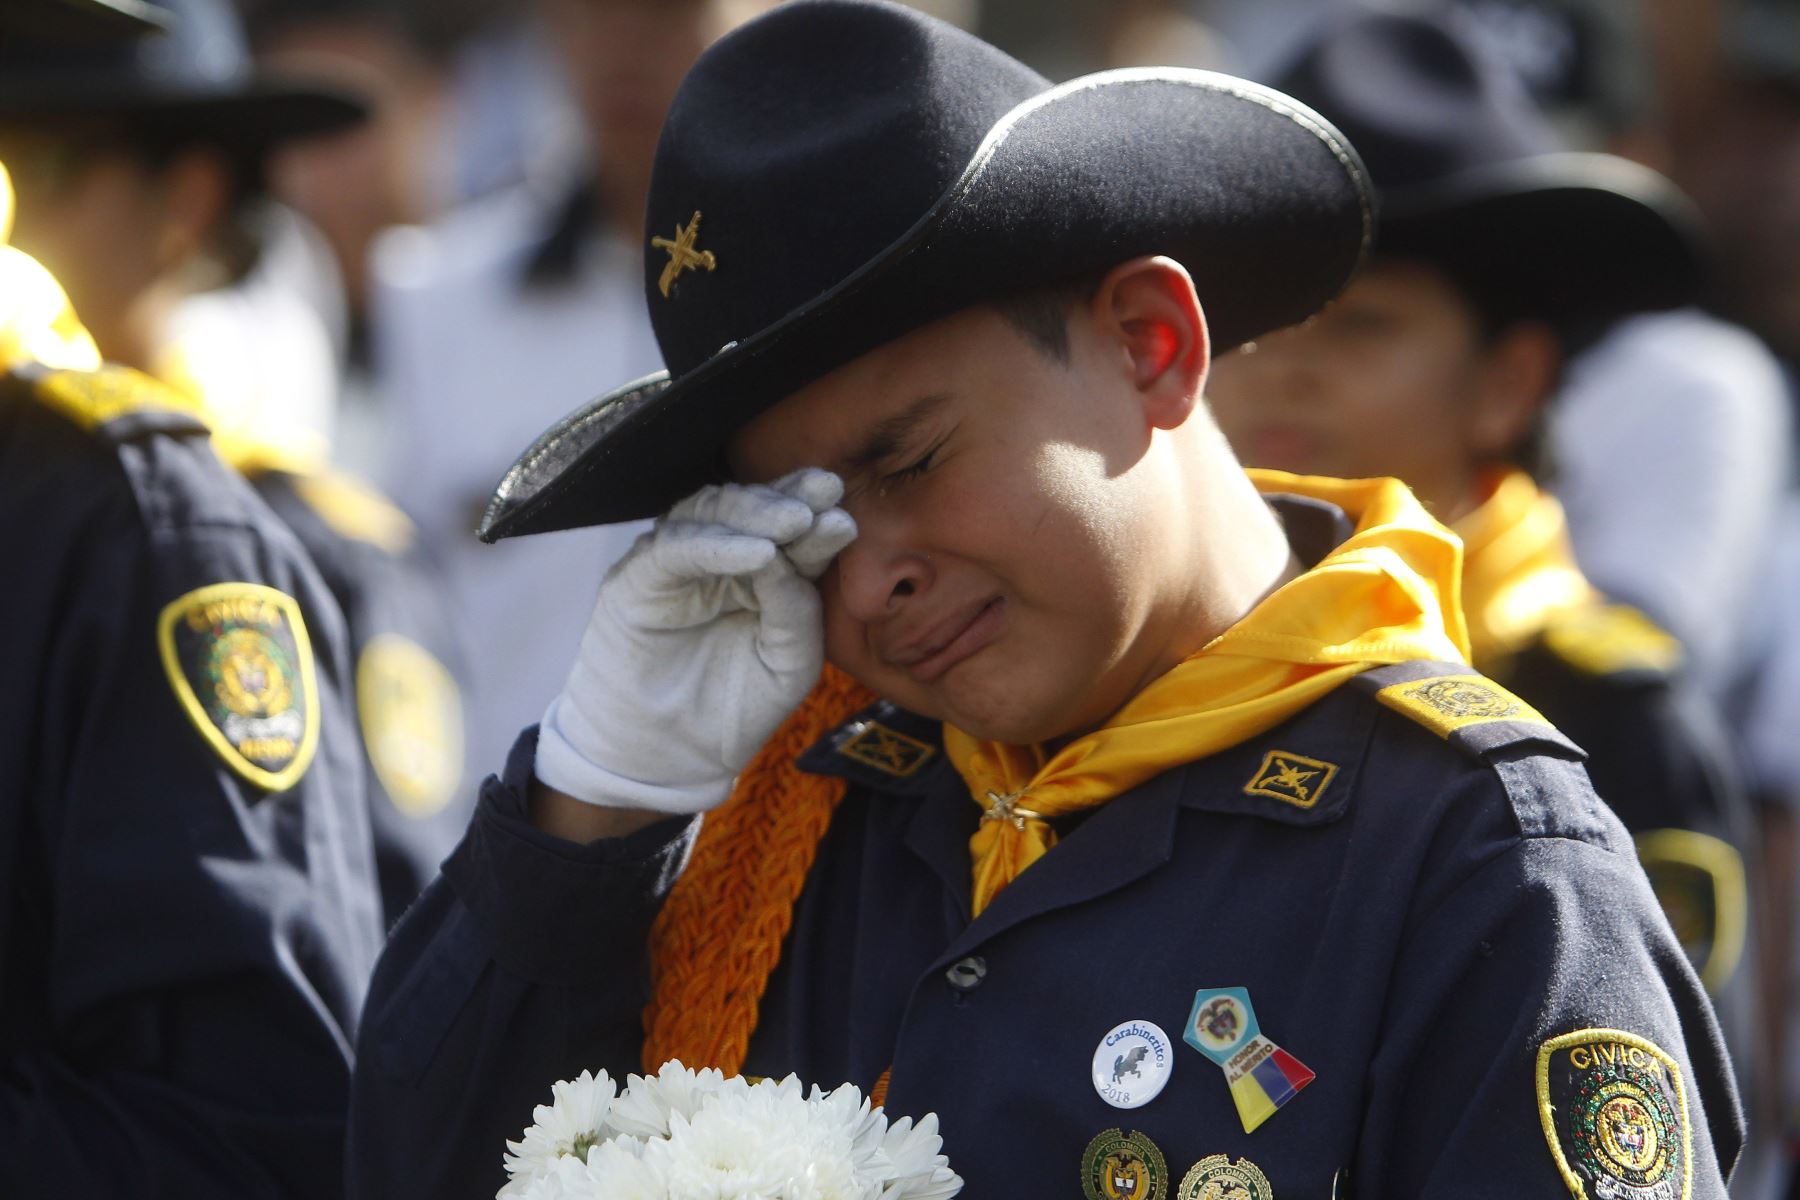 Un niño de la Escuela de Carabineros de la Policía Nacional de Colombia, llora durante el velorio de uno de los cadetes fallecido en el atentado del pasado jueves contra la Escuela de Cadetes de la Policía de Colombia en Bogotá, que dejó 20 muertos, más el atacante, y 68 heridos. Foto: EFE